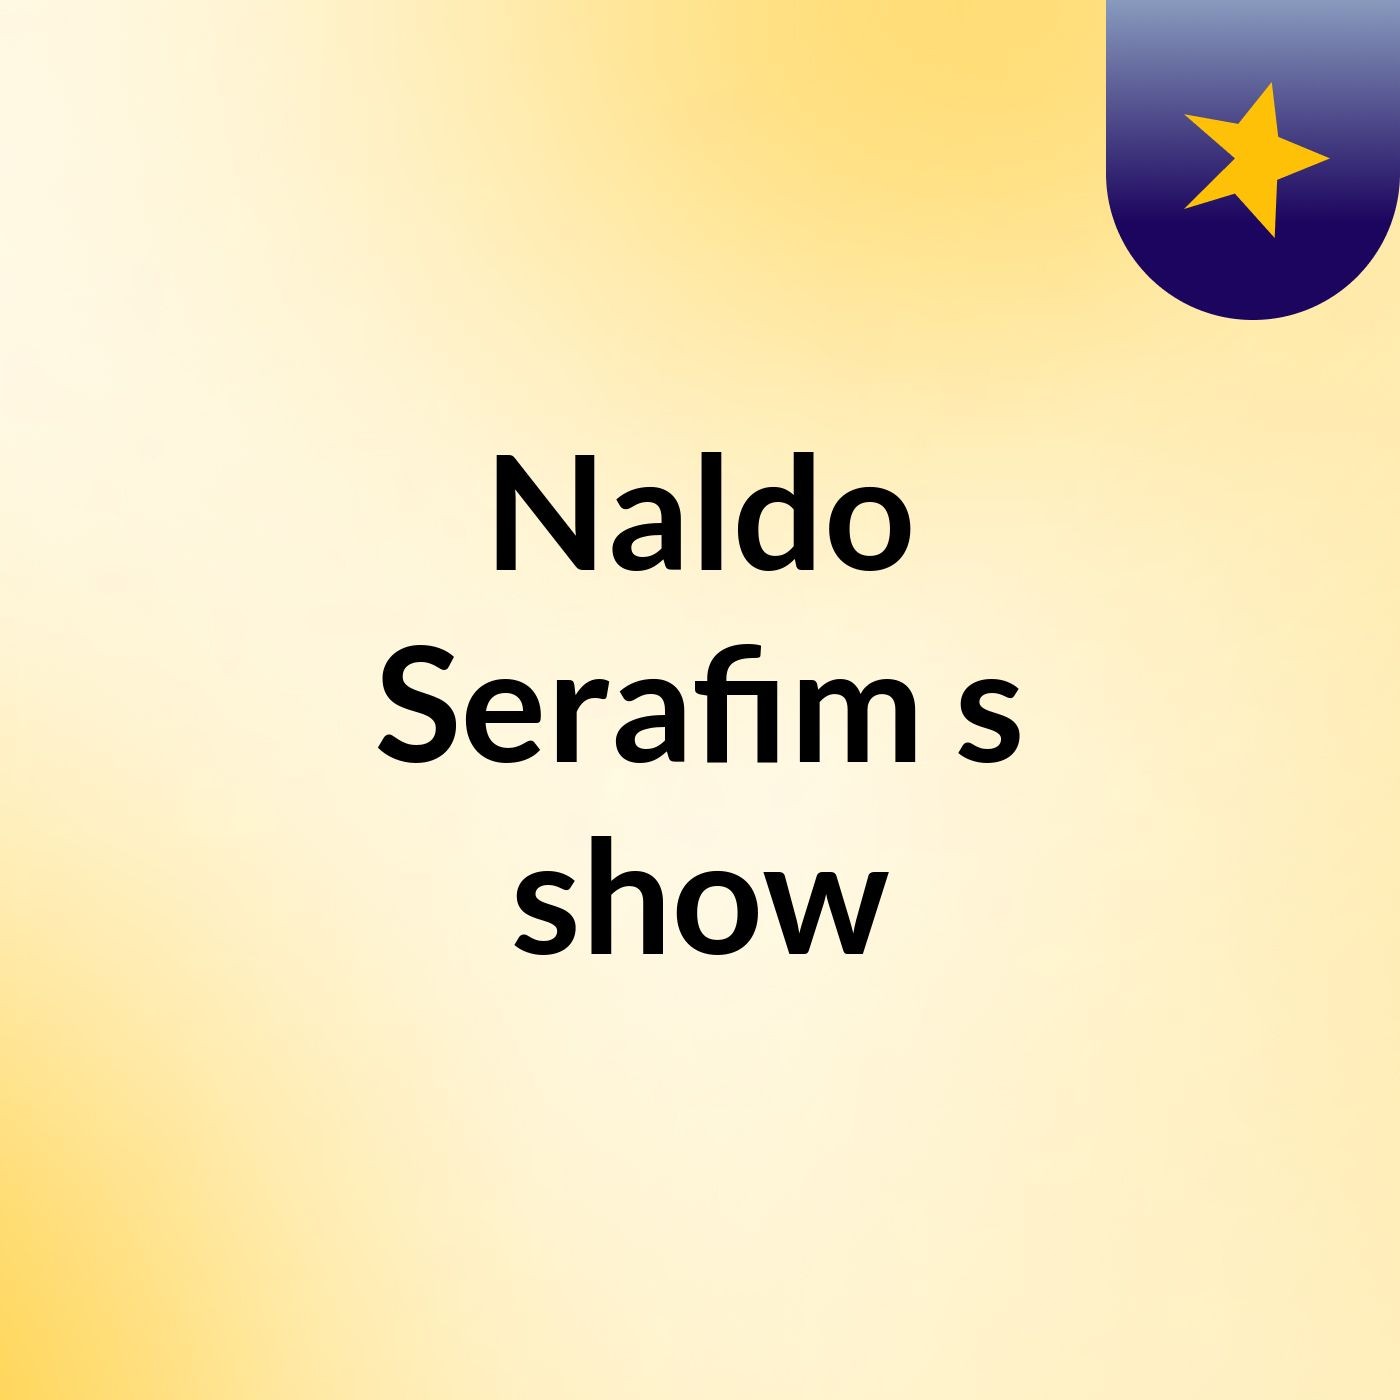 Naldo Serafim's show